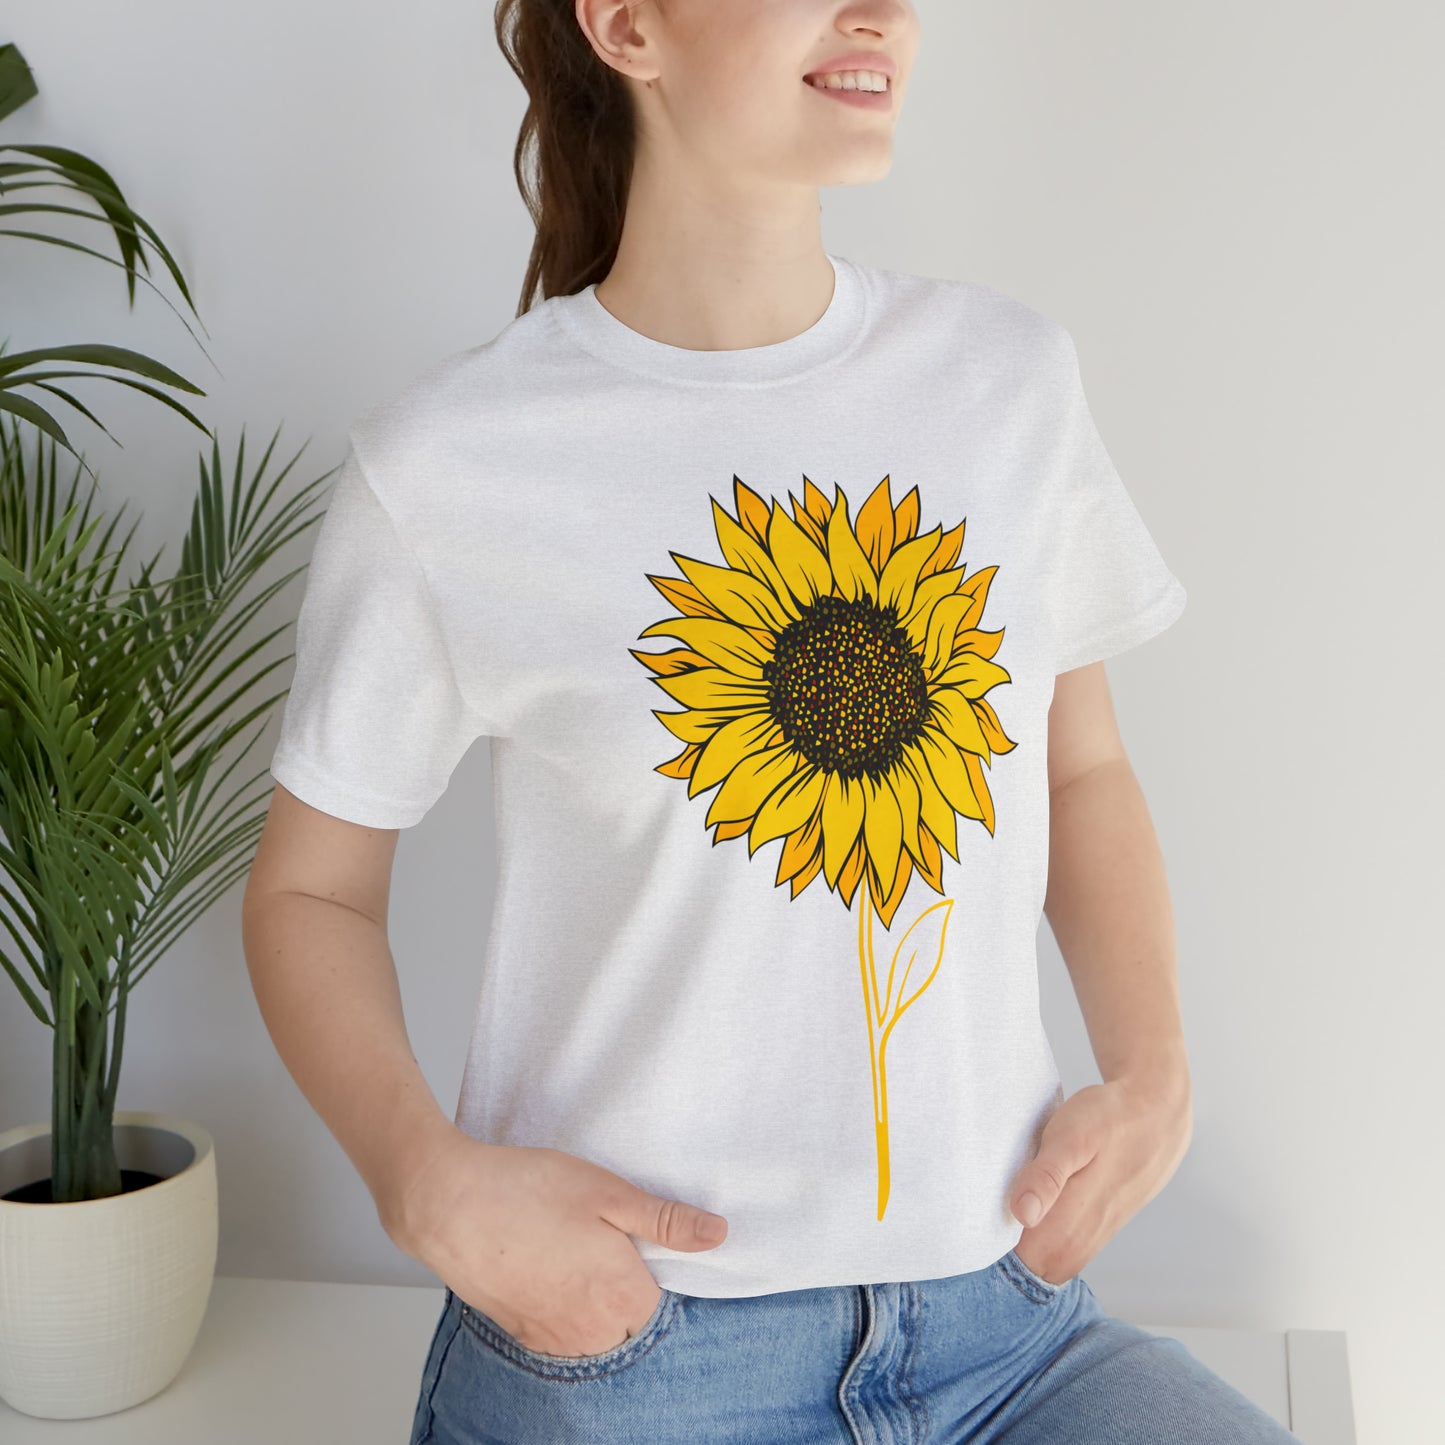 Sunflower Shirt, Floral Tee Shirt, Flower Shirt, Garden Shirt, Womens Fall Summer Shirt Sunshine Tee, Gift for Gardener, Nature love T shirt